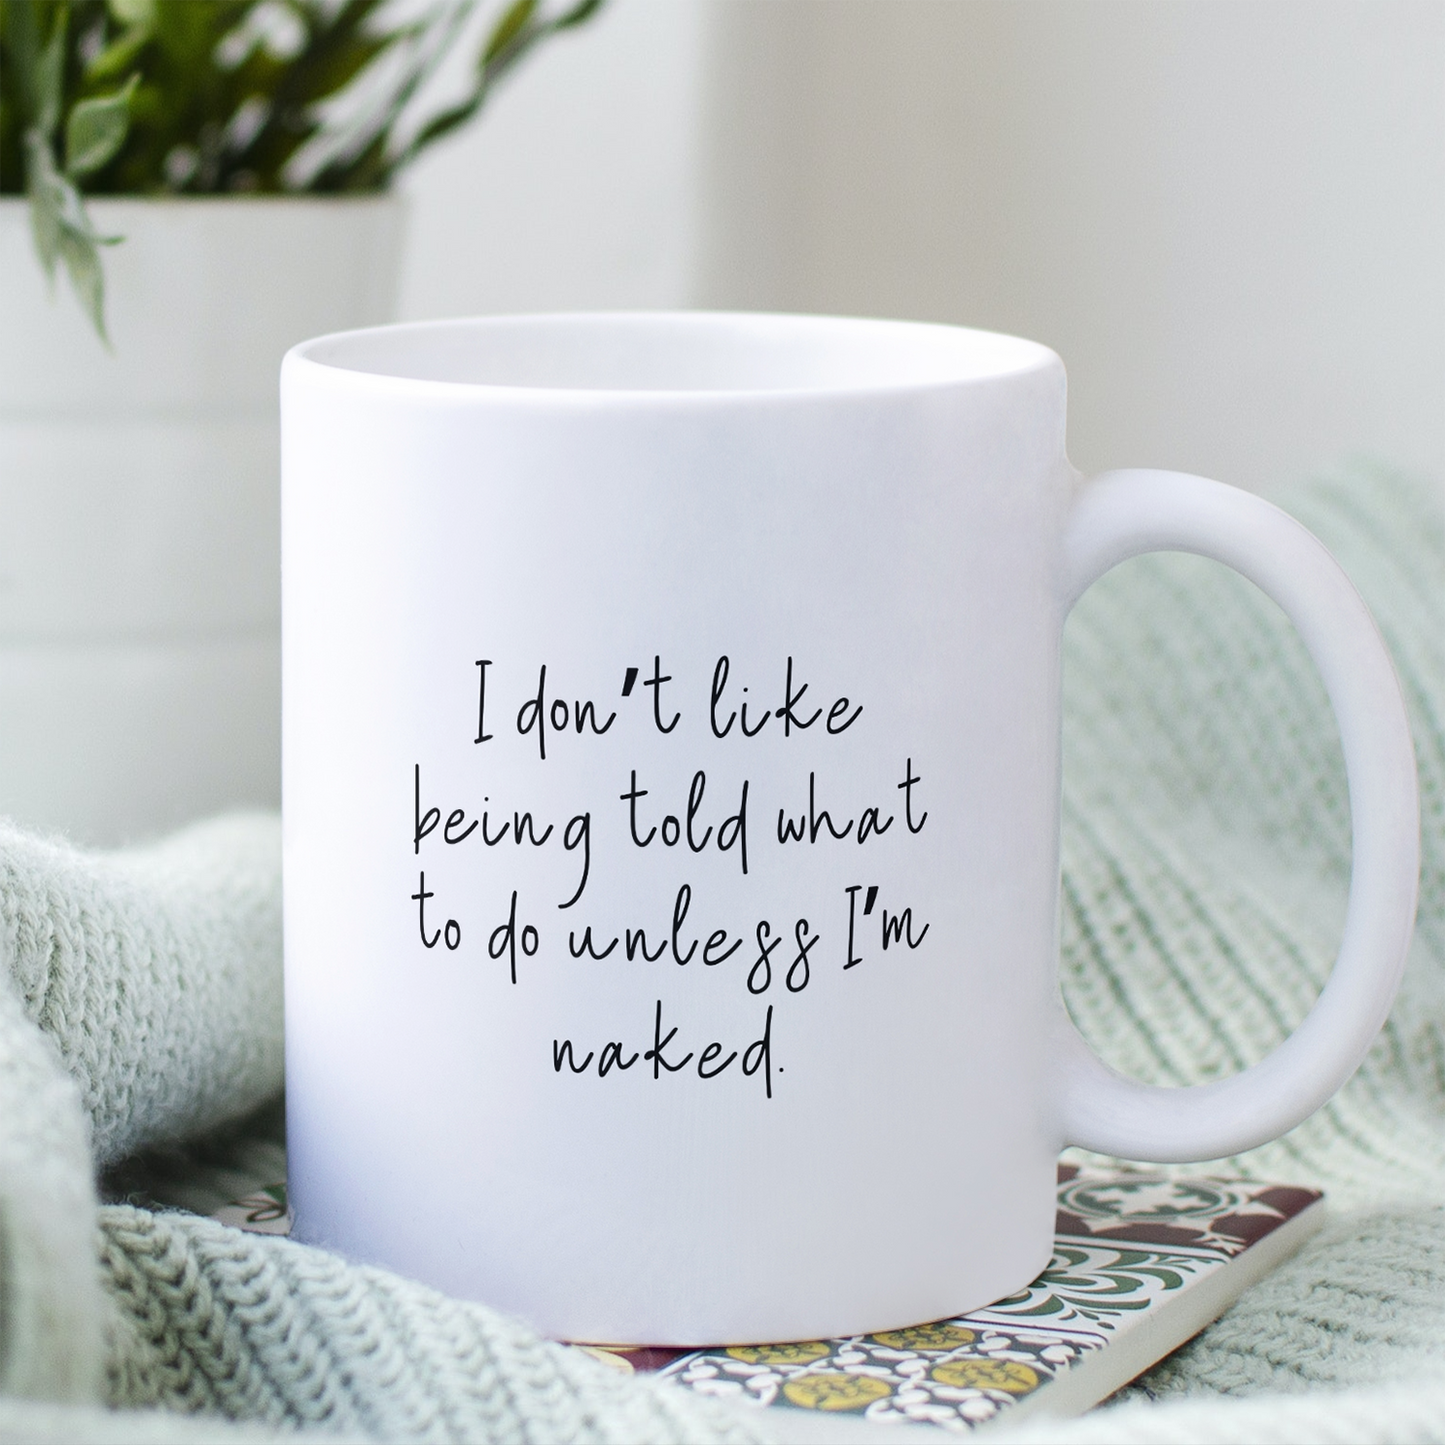 Unless I'm naked - Mug